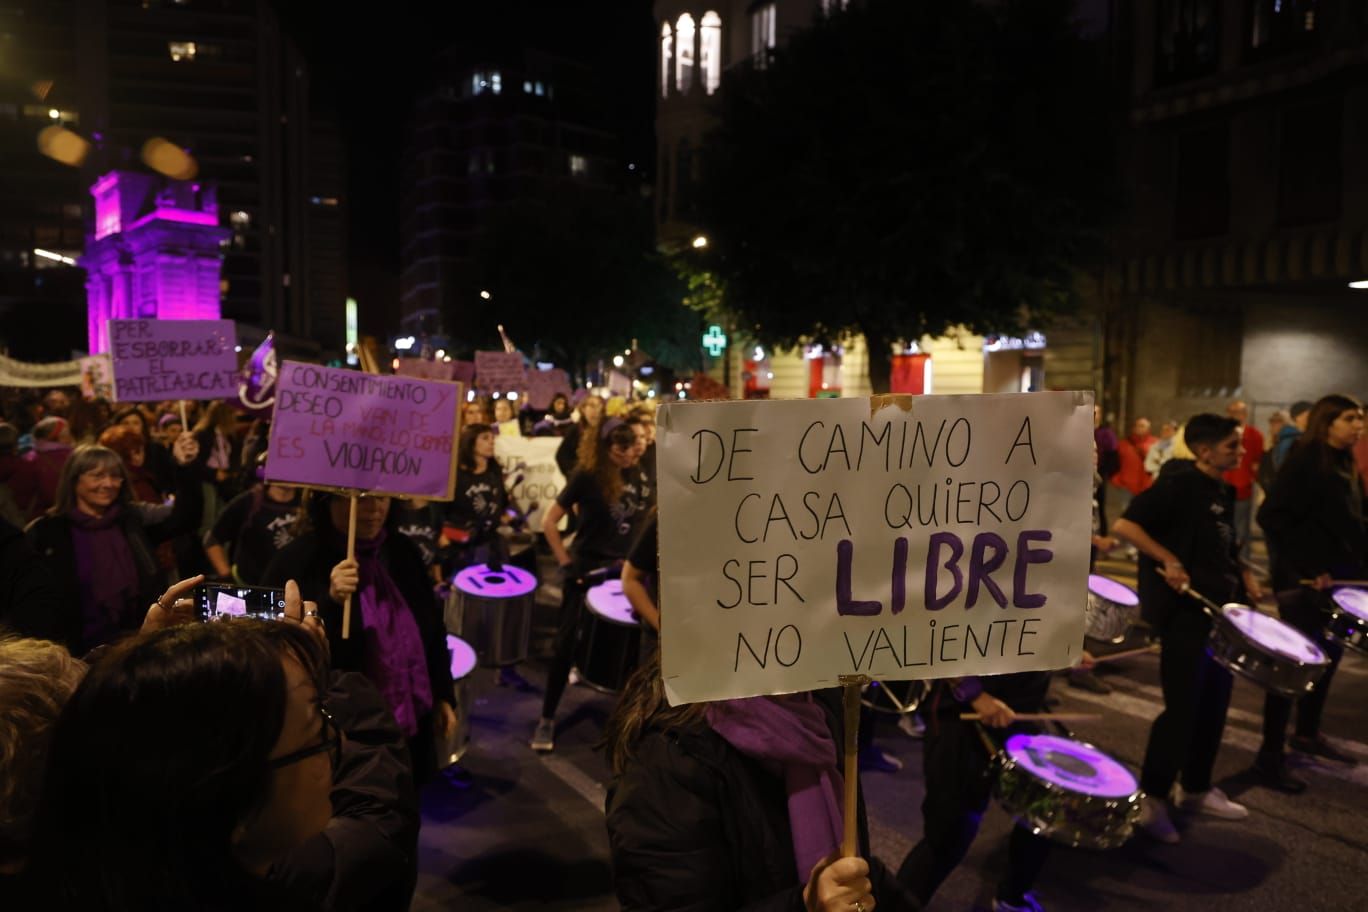 València se tiñe de morado en la lucha contra la violencia machista